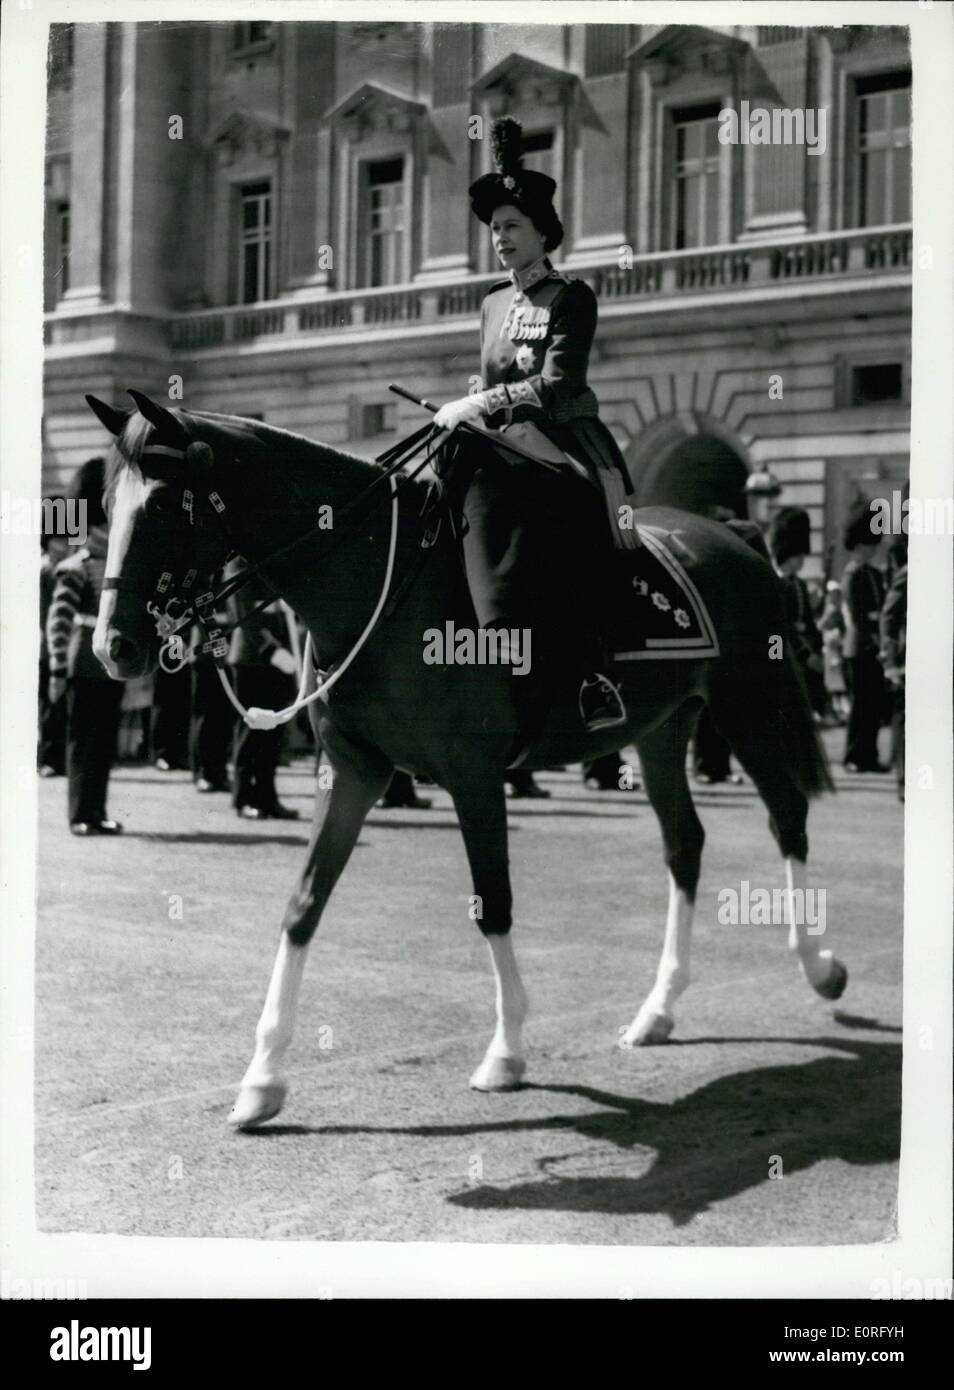 Juin 06, 1959 - La parade du cérémonie Couleur : H. M. la Reine a pris le salut sur Horse Guards Parade, au lieu d'aujourd'hui pour marquer son anniversaire officiel. Photo montre H. M. la Reine vu quitter le palais de Buckingham aujourd hui pour la cérémonie. Banque D'Images